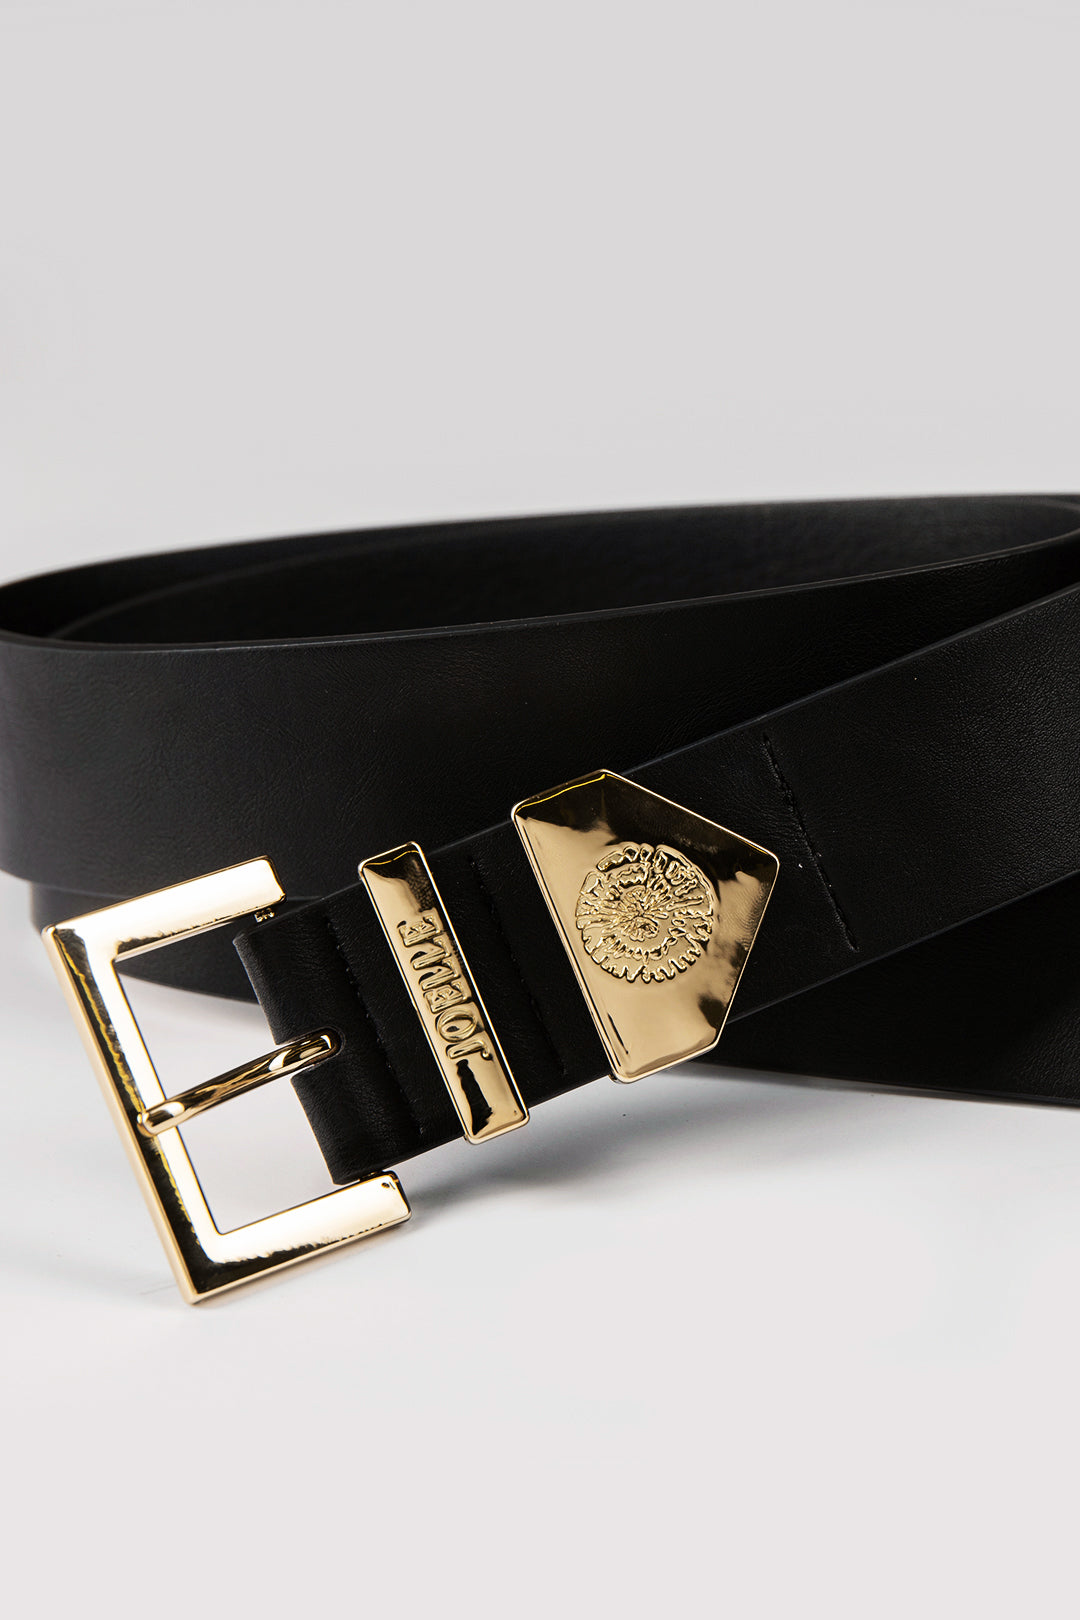 Black belt with gold details | Muriel